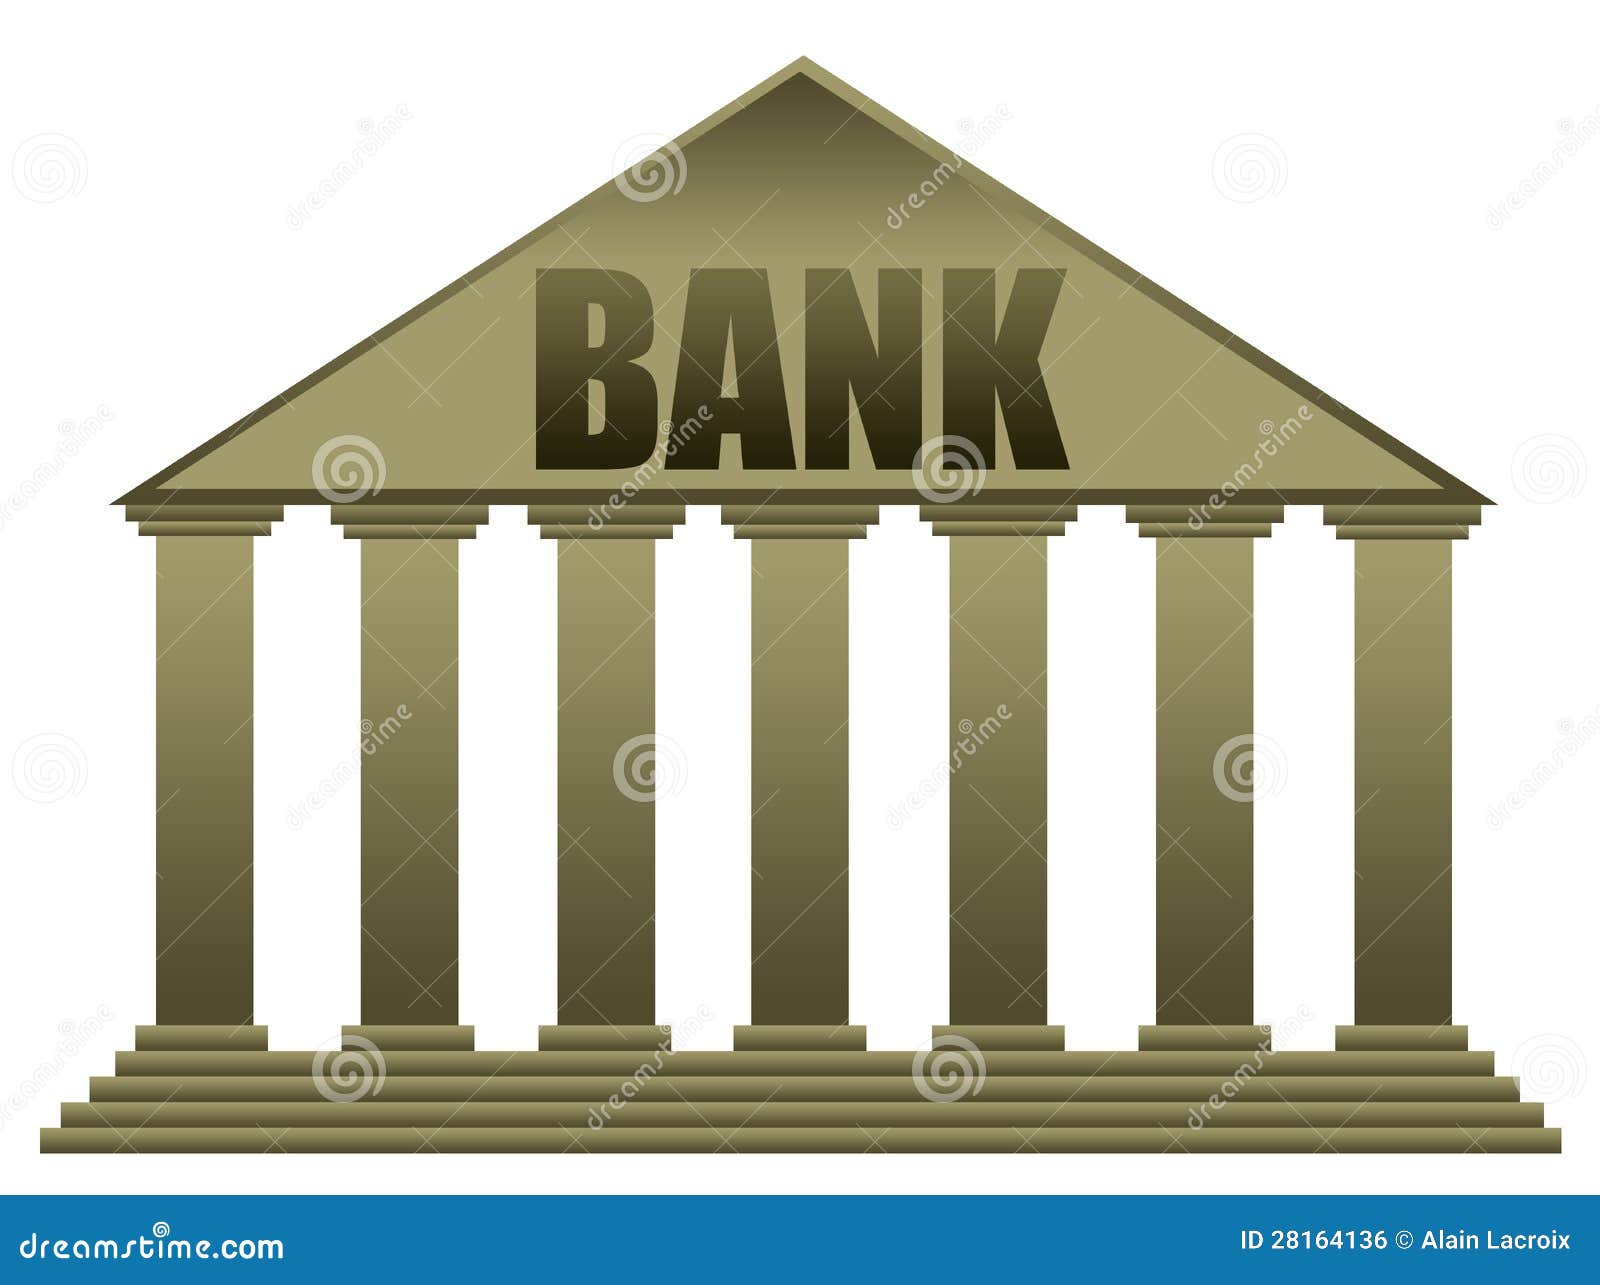 bank logo clip art - photo #21